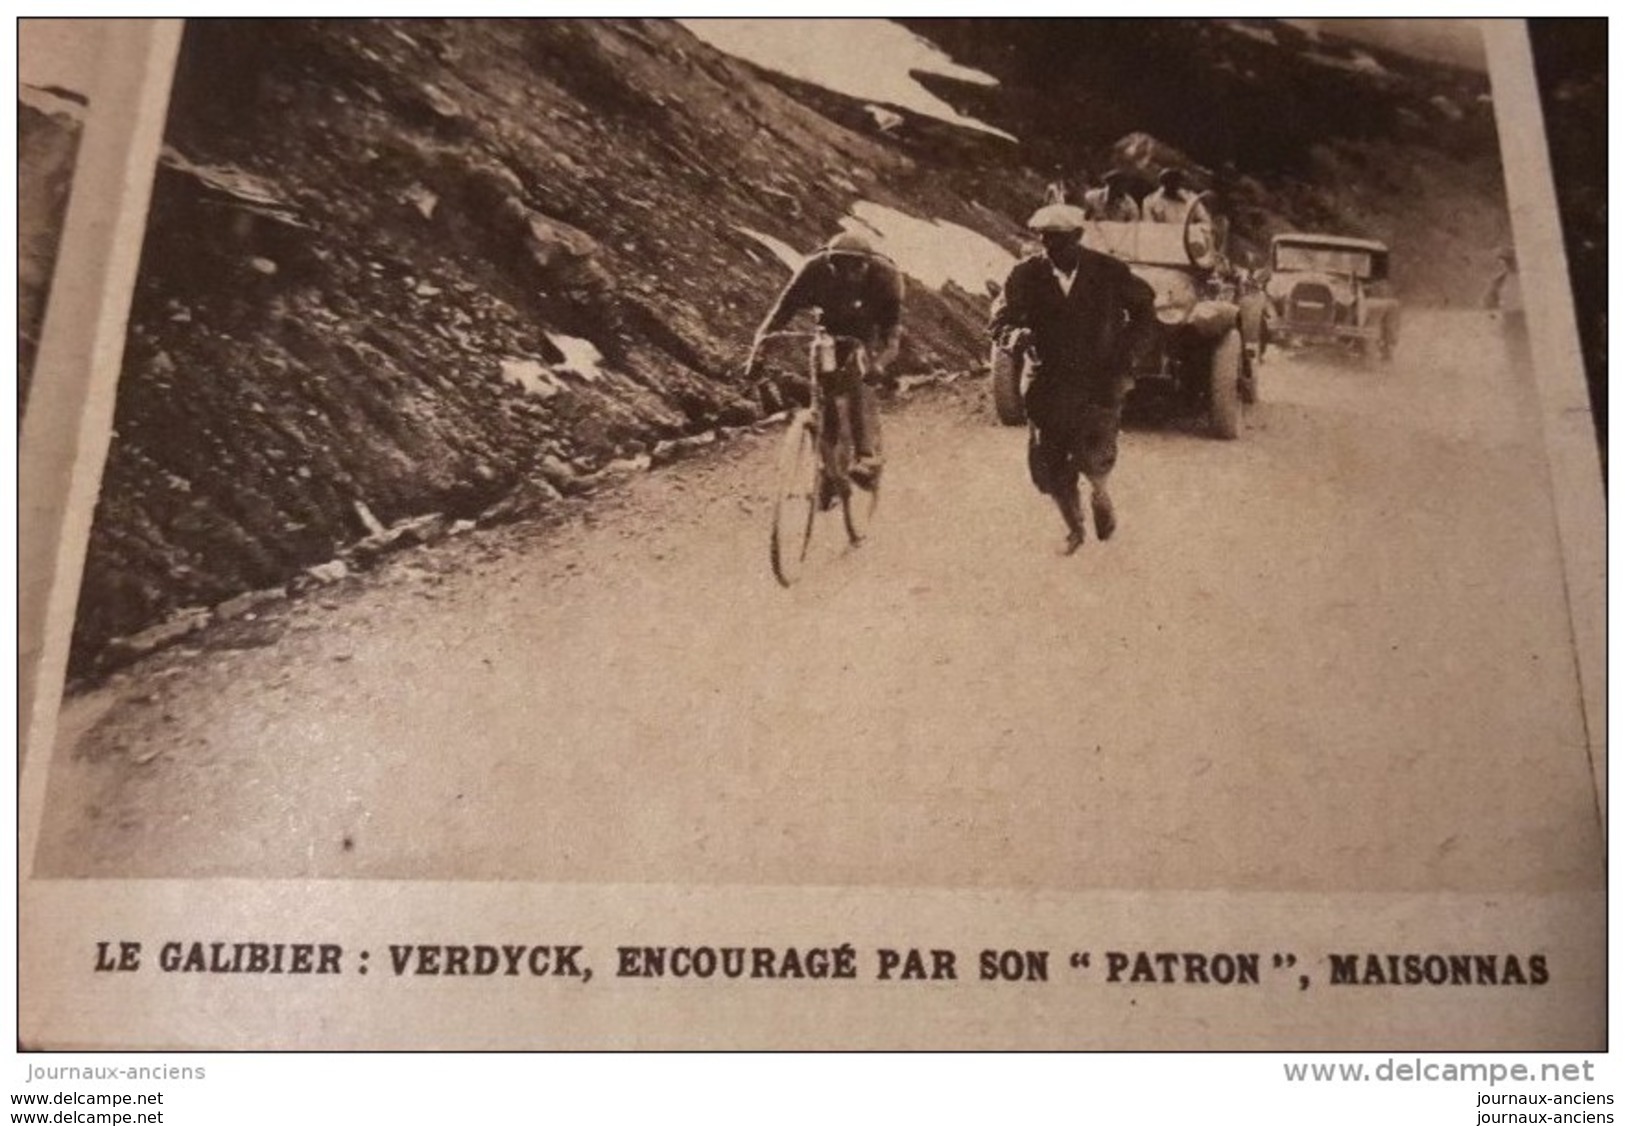 1928 TOUR DE FRANCE CYCLISTE - Nicolas FRANTZ - PONT D&acute;AUBERSSAGNE - GALIBIER - LAUTARET - MARATHON - TENNIS WIMBL